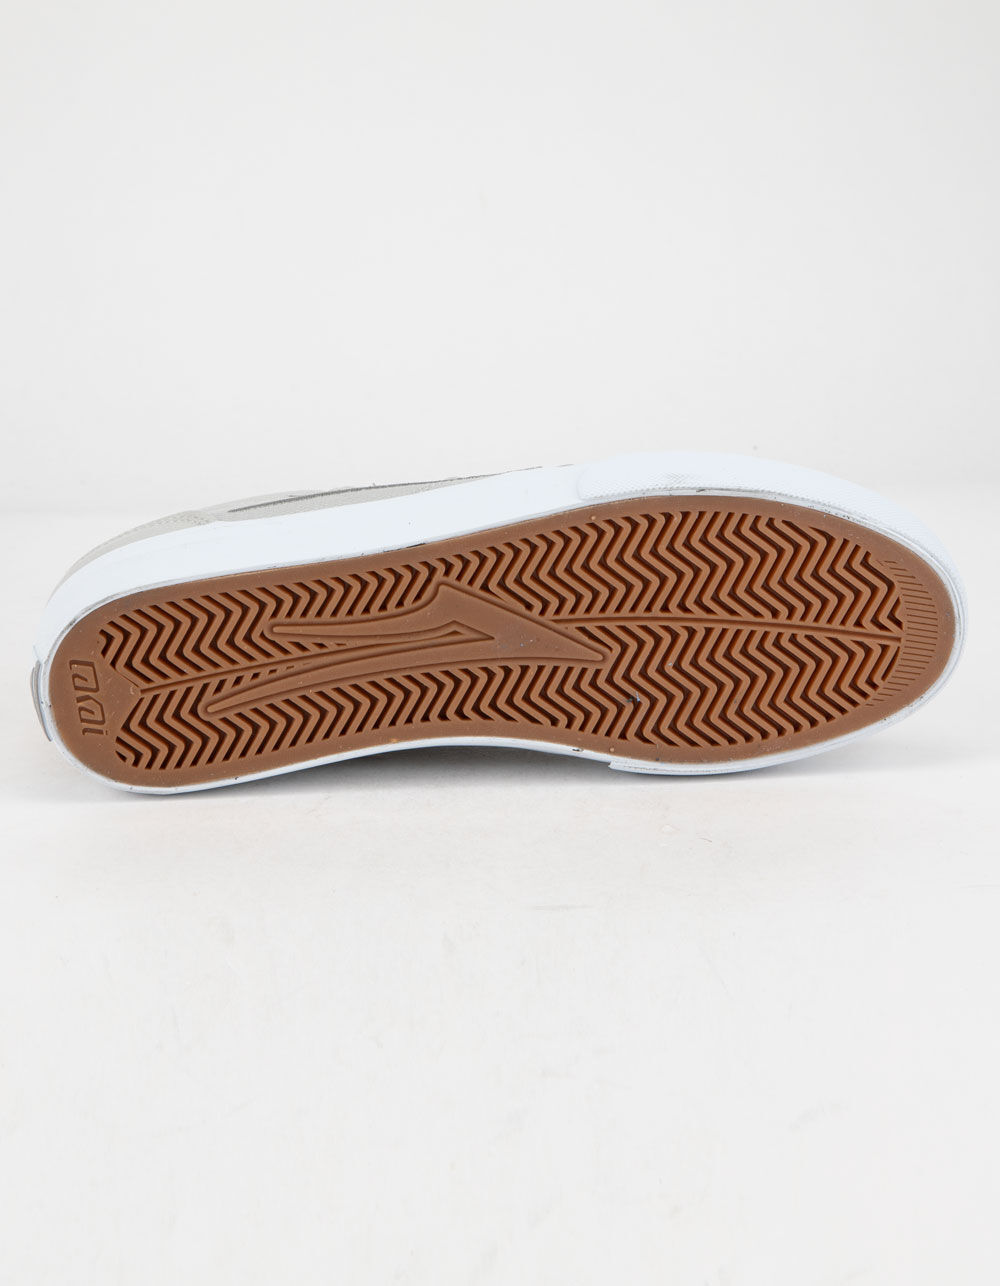 LAKAI Griffin Silver Textile Mens Shoes - SILVER TEXTILE | Tillys